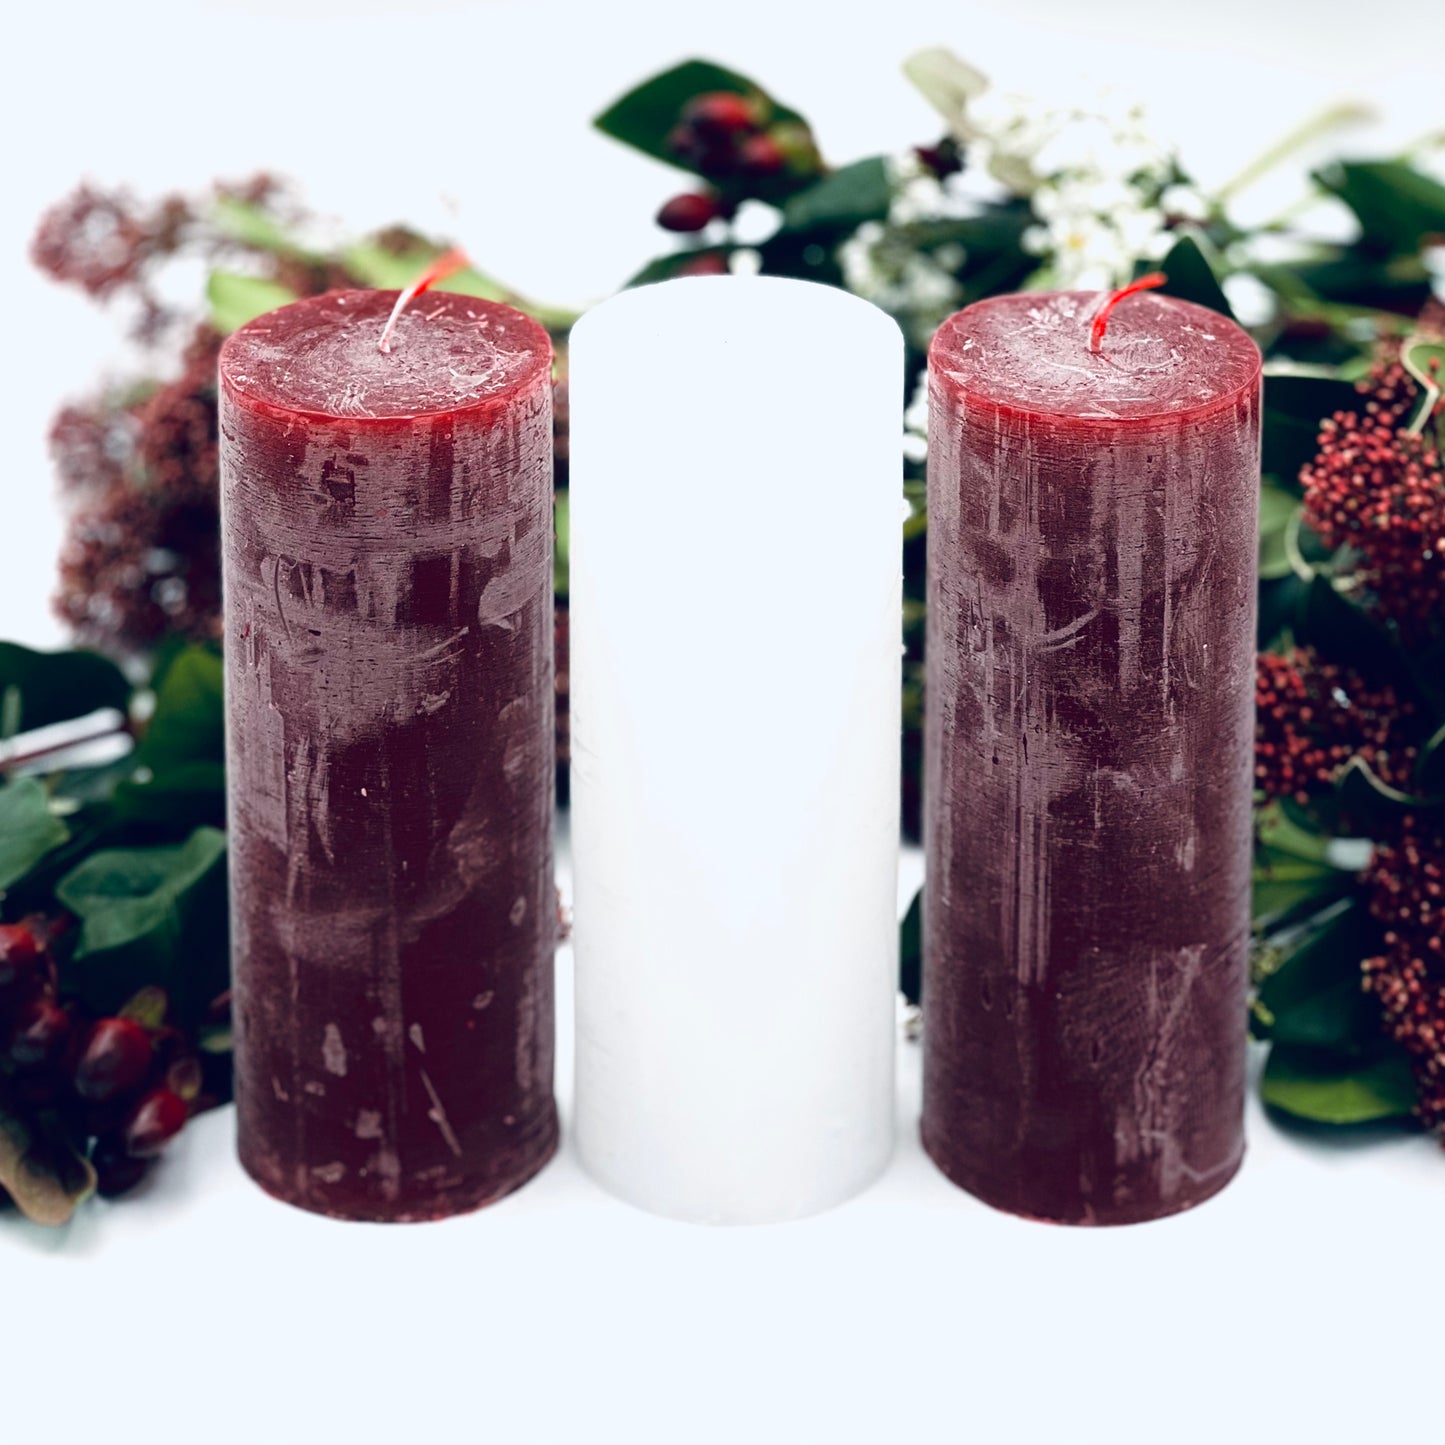 Rustikveida sveču komplekts “Latvija” (komplektā 3 sveces)